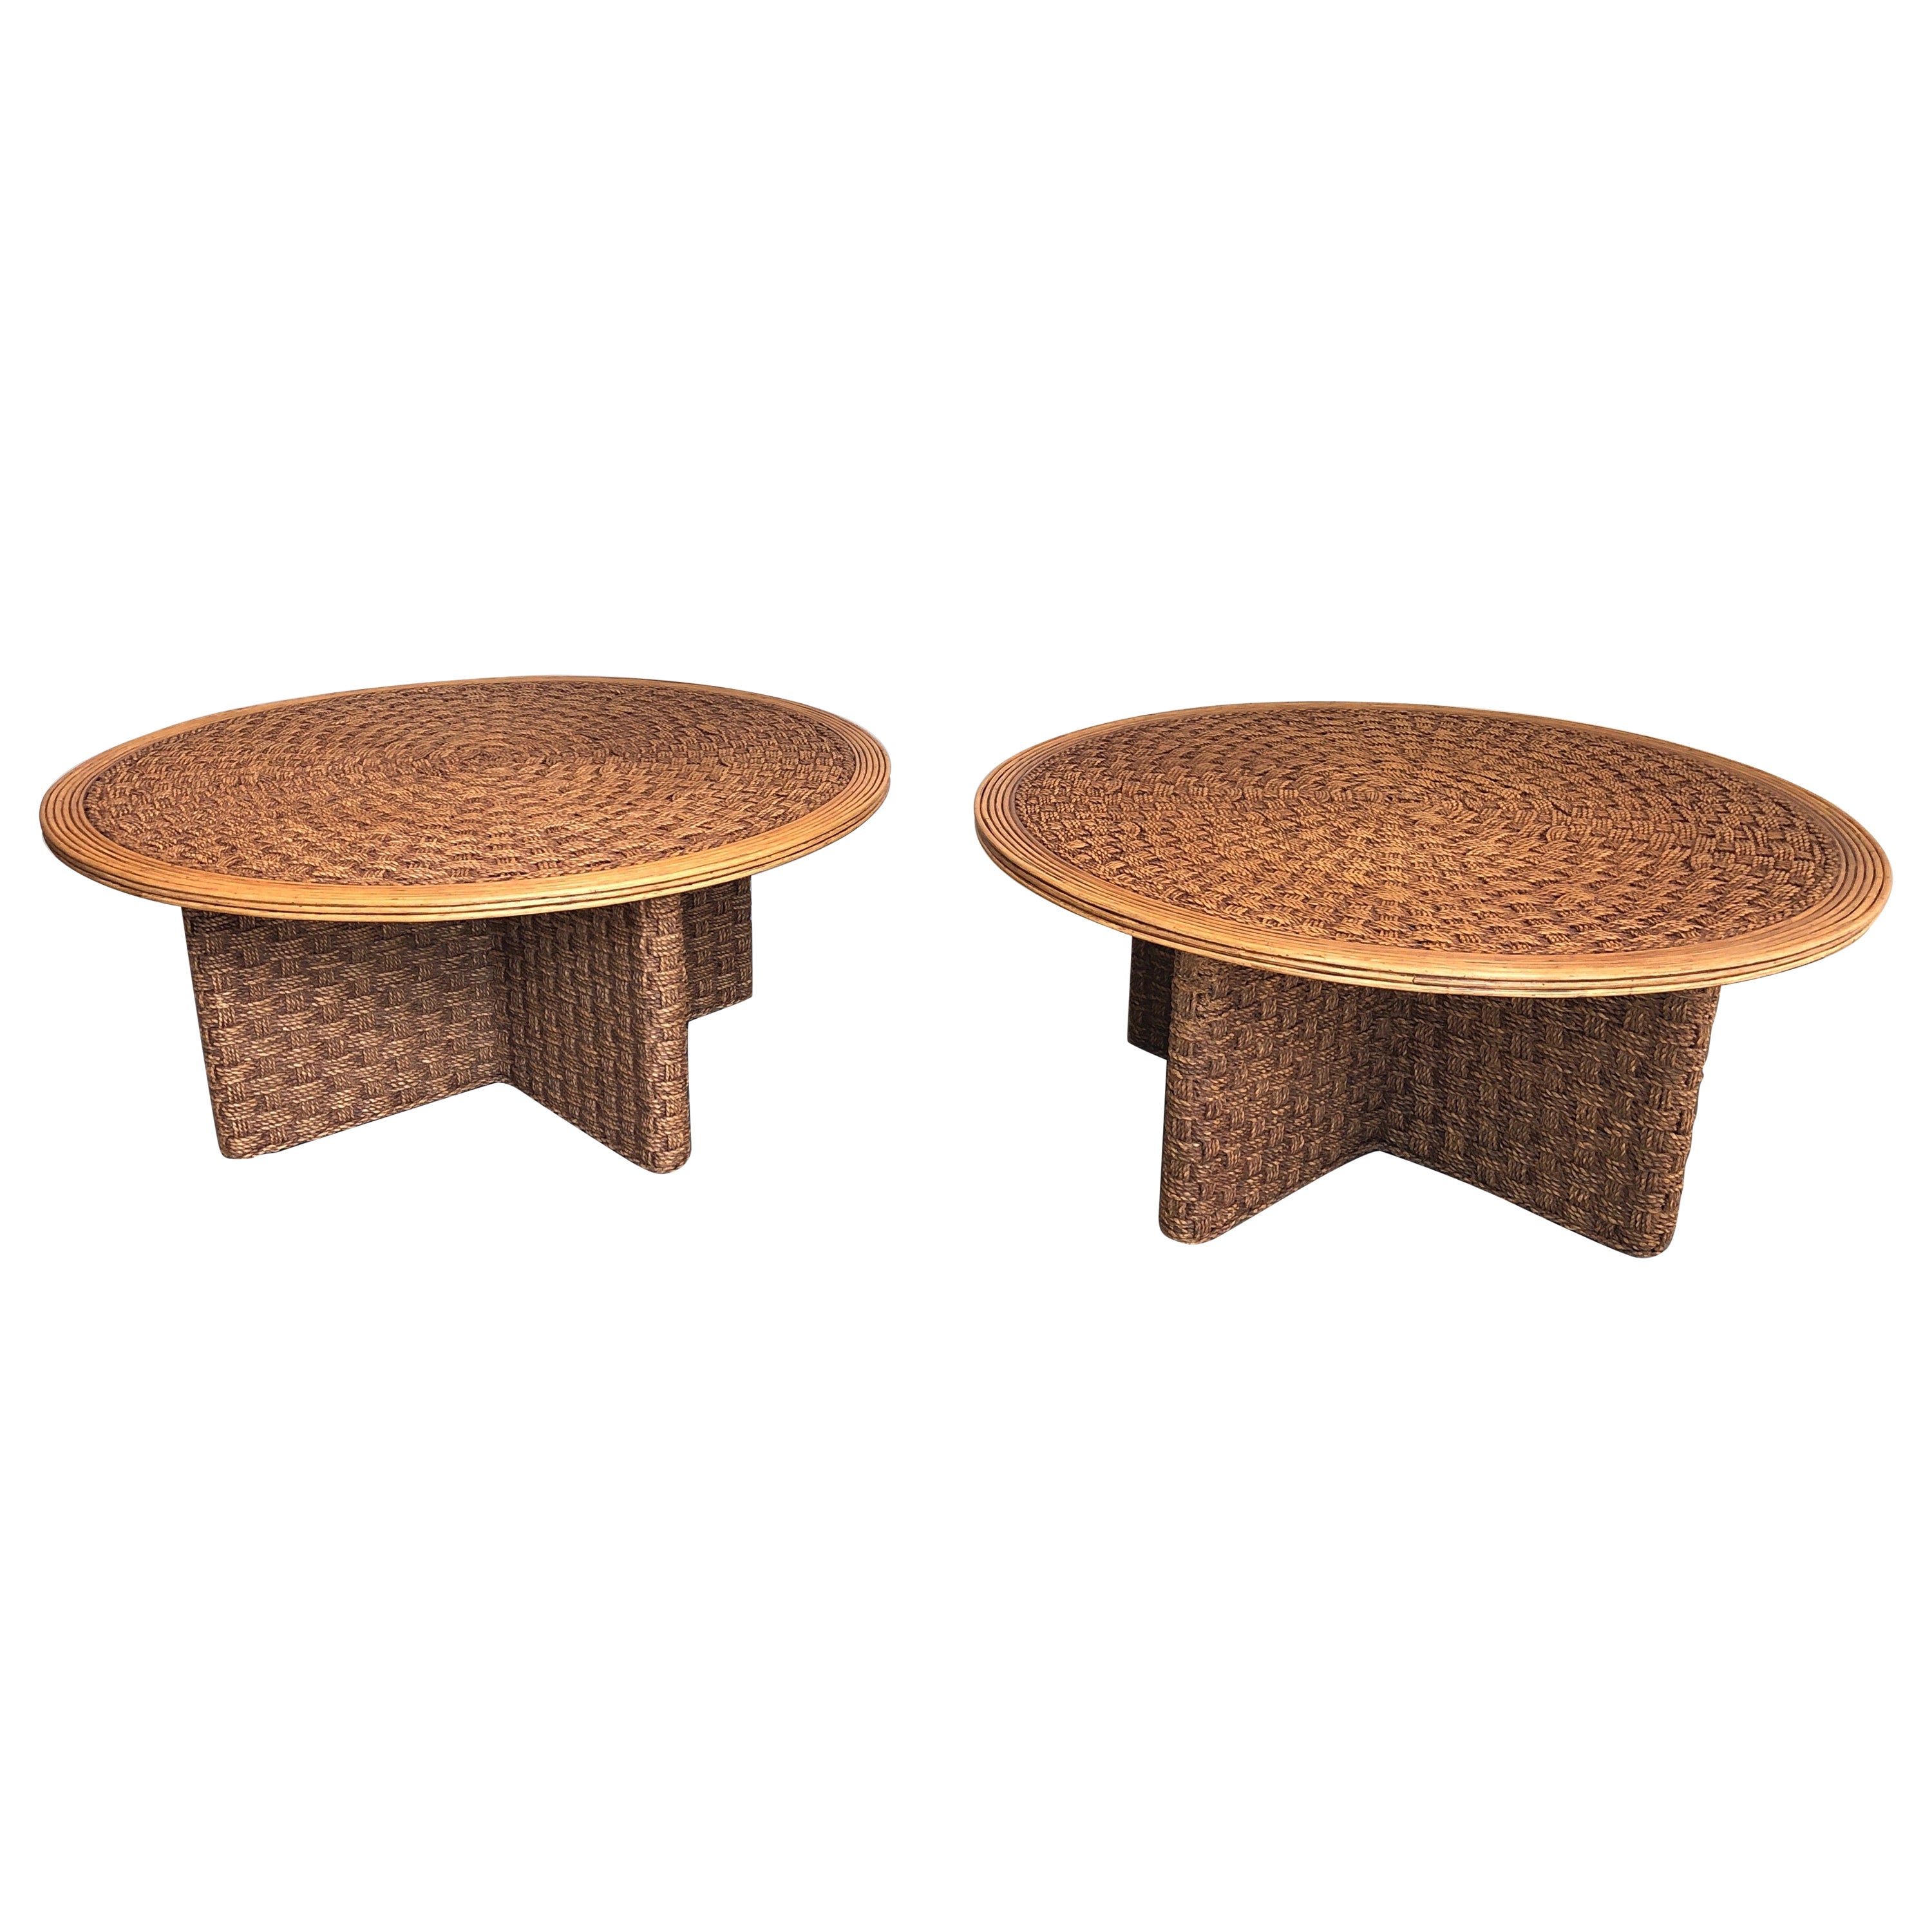 Rare paire de grandes tables basses rondes en corde et Wood Wood dans le style d'Audoux Minet